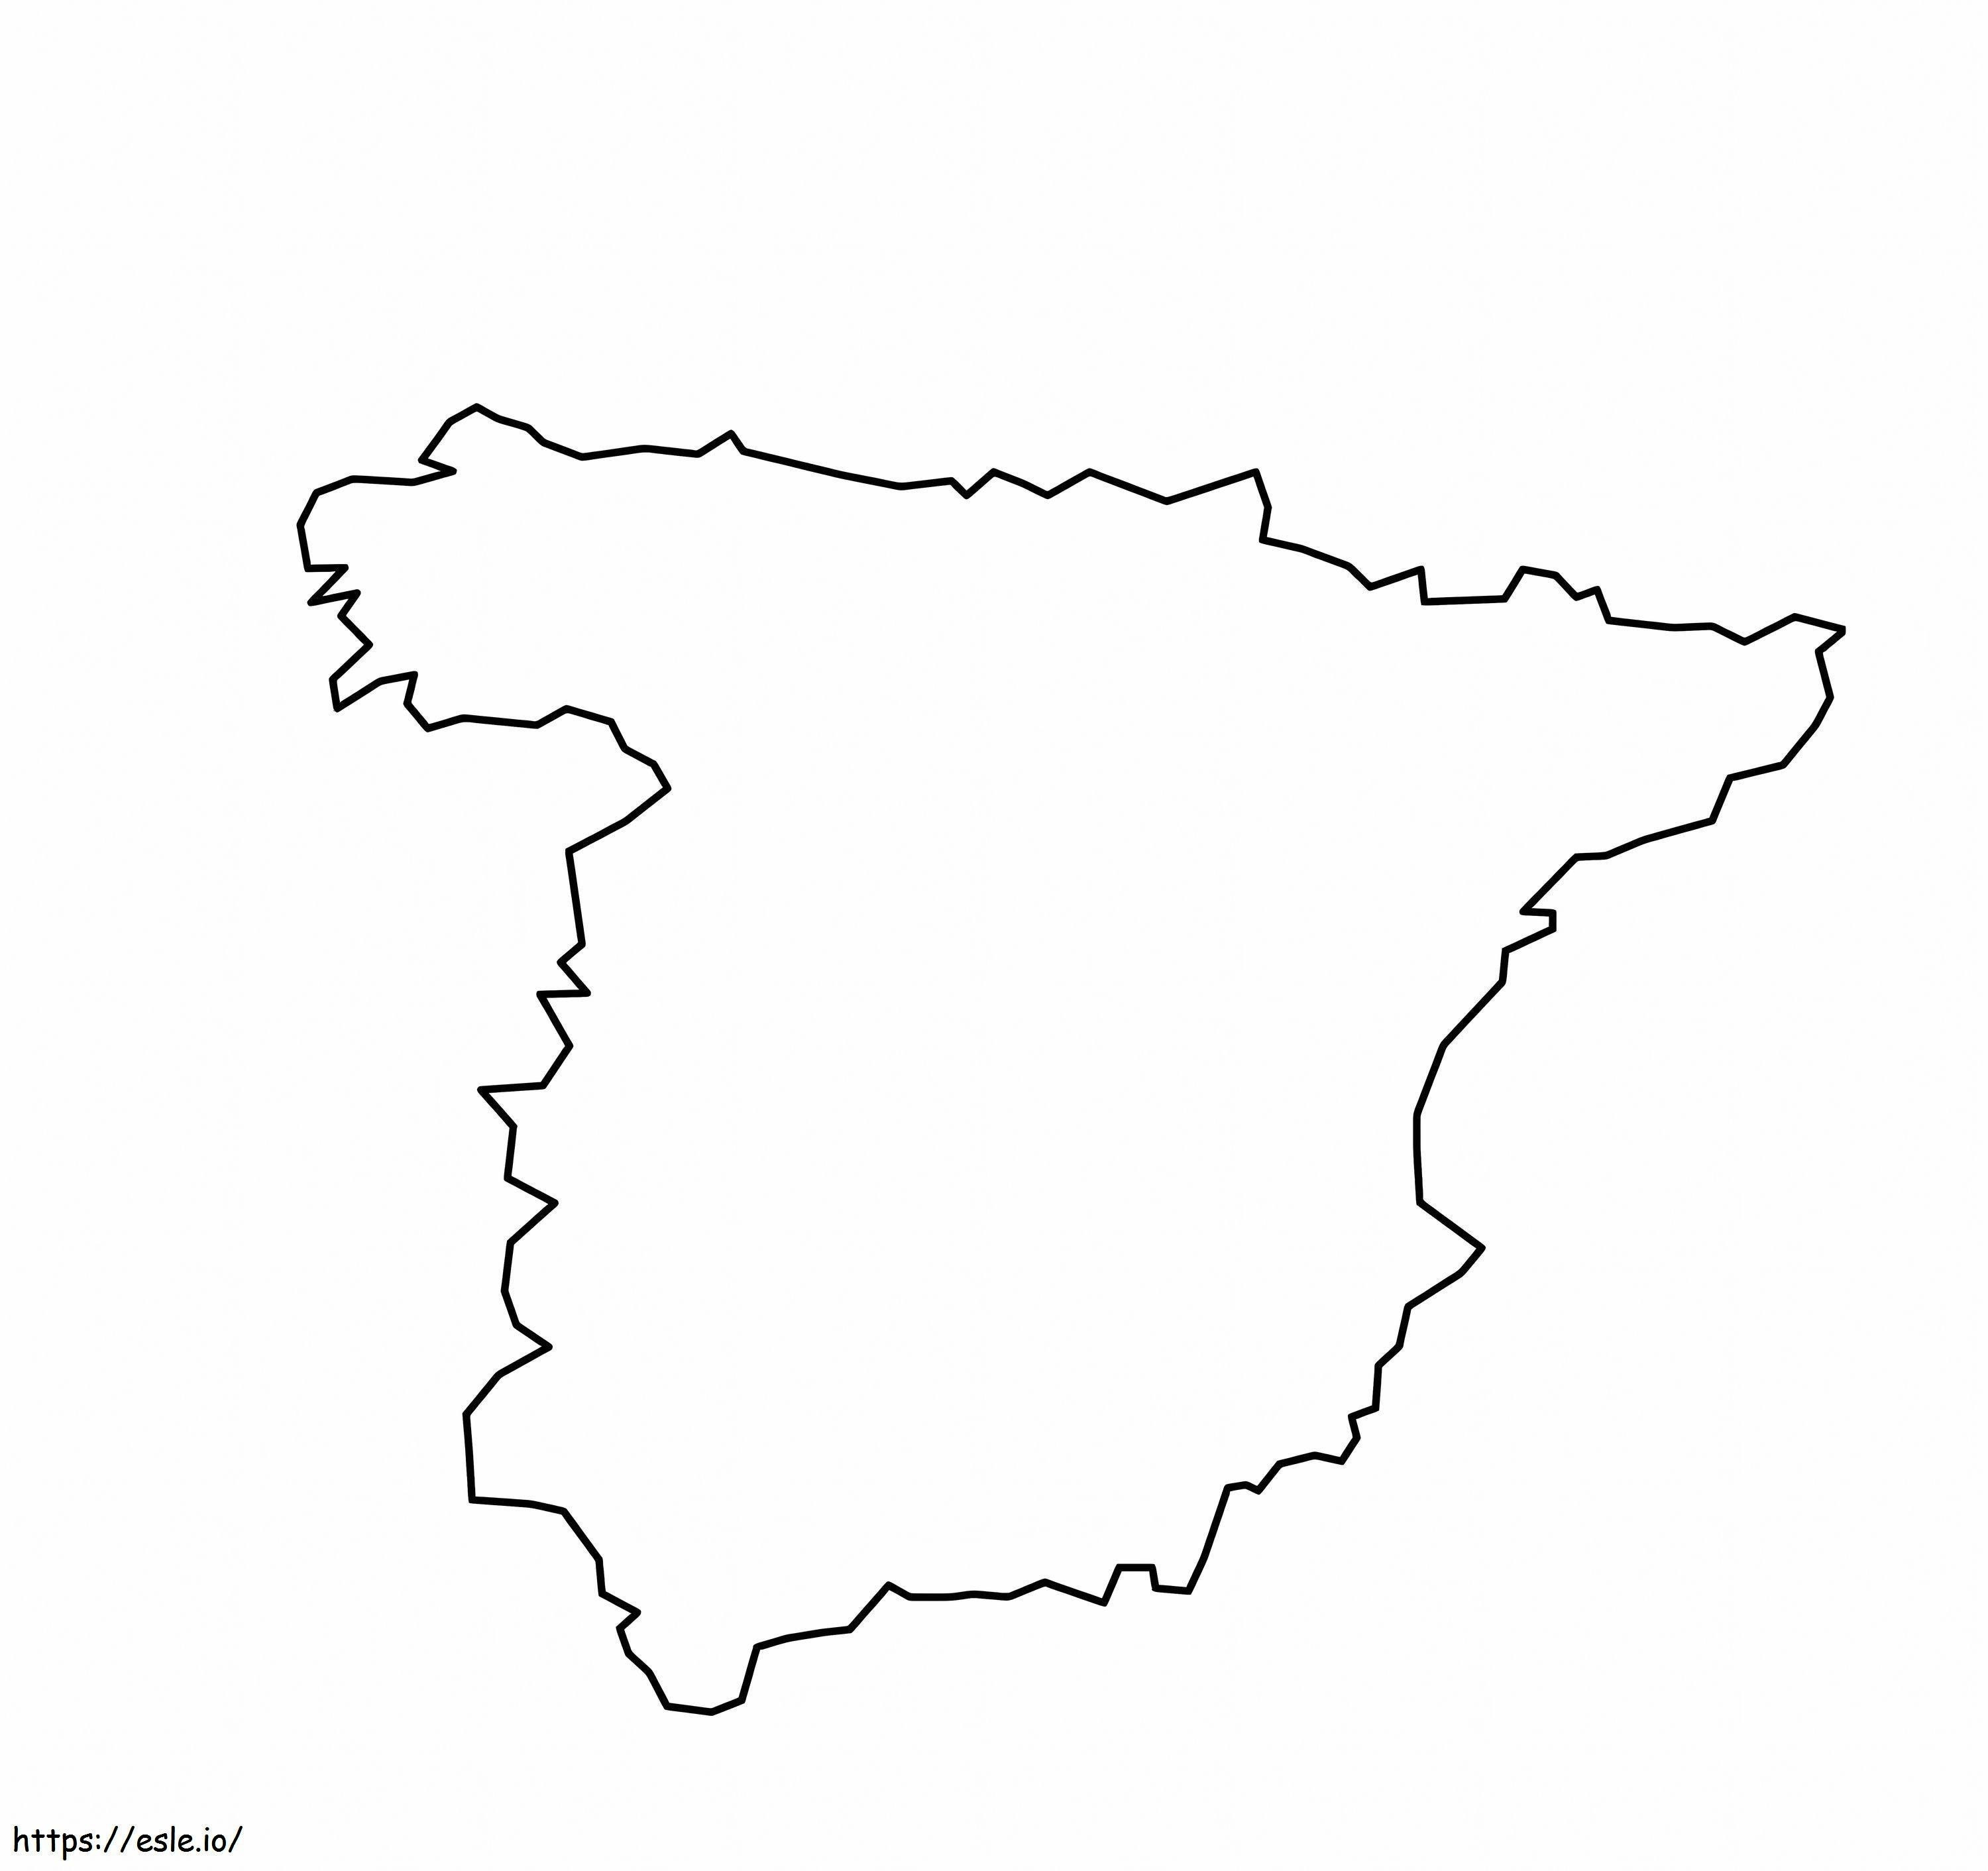 Peta Spanyol Untuk Diwarnai Gambar Mewarnai